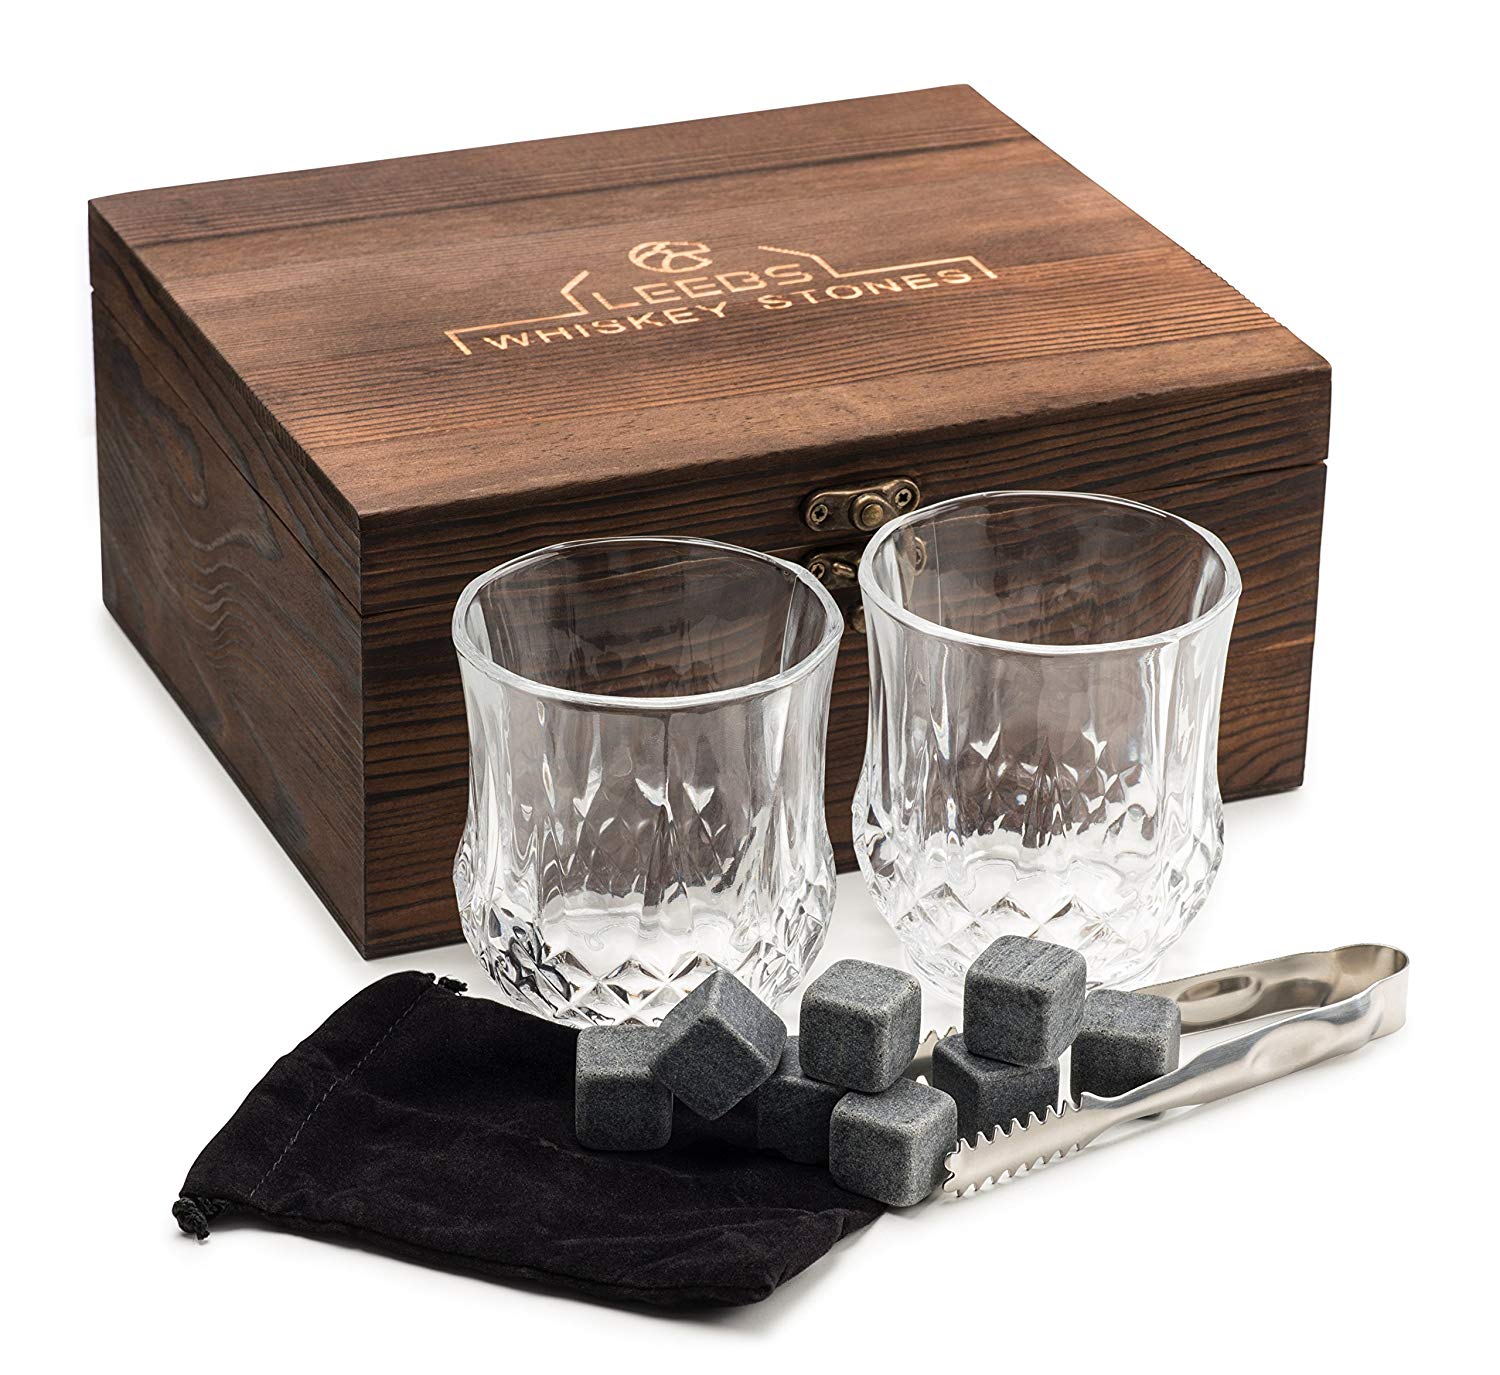 Premium Whiskey Stones Gift Set - 2 Large Whiskey Glasses, 8 Granite Scotch Chilling Rocks, Tongs, Velvet Pouch in Elegant Wooden Gift Box Packaging